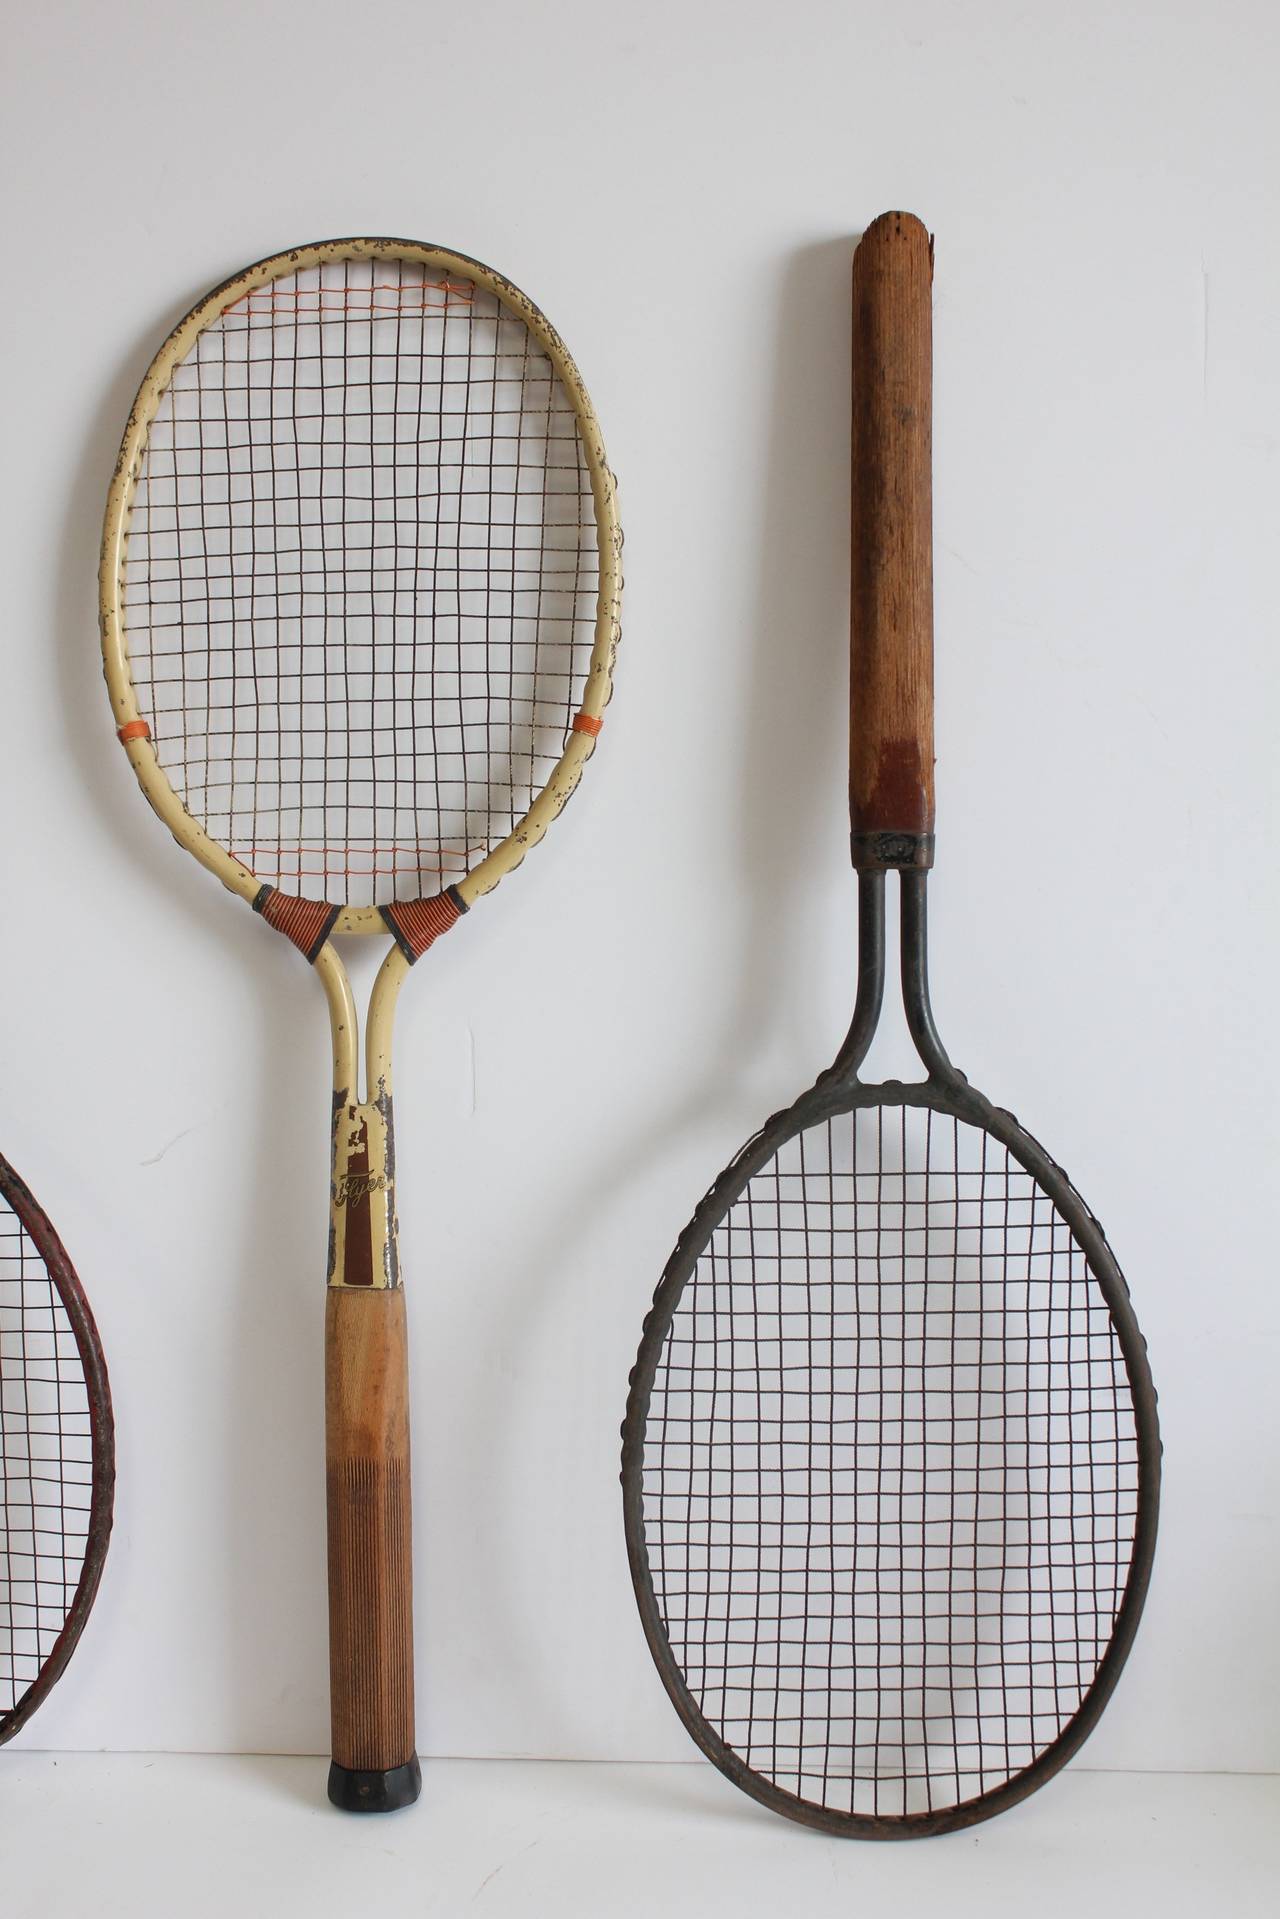 1920s tennis racket